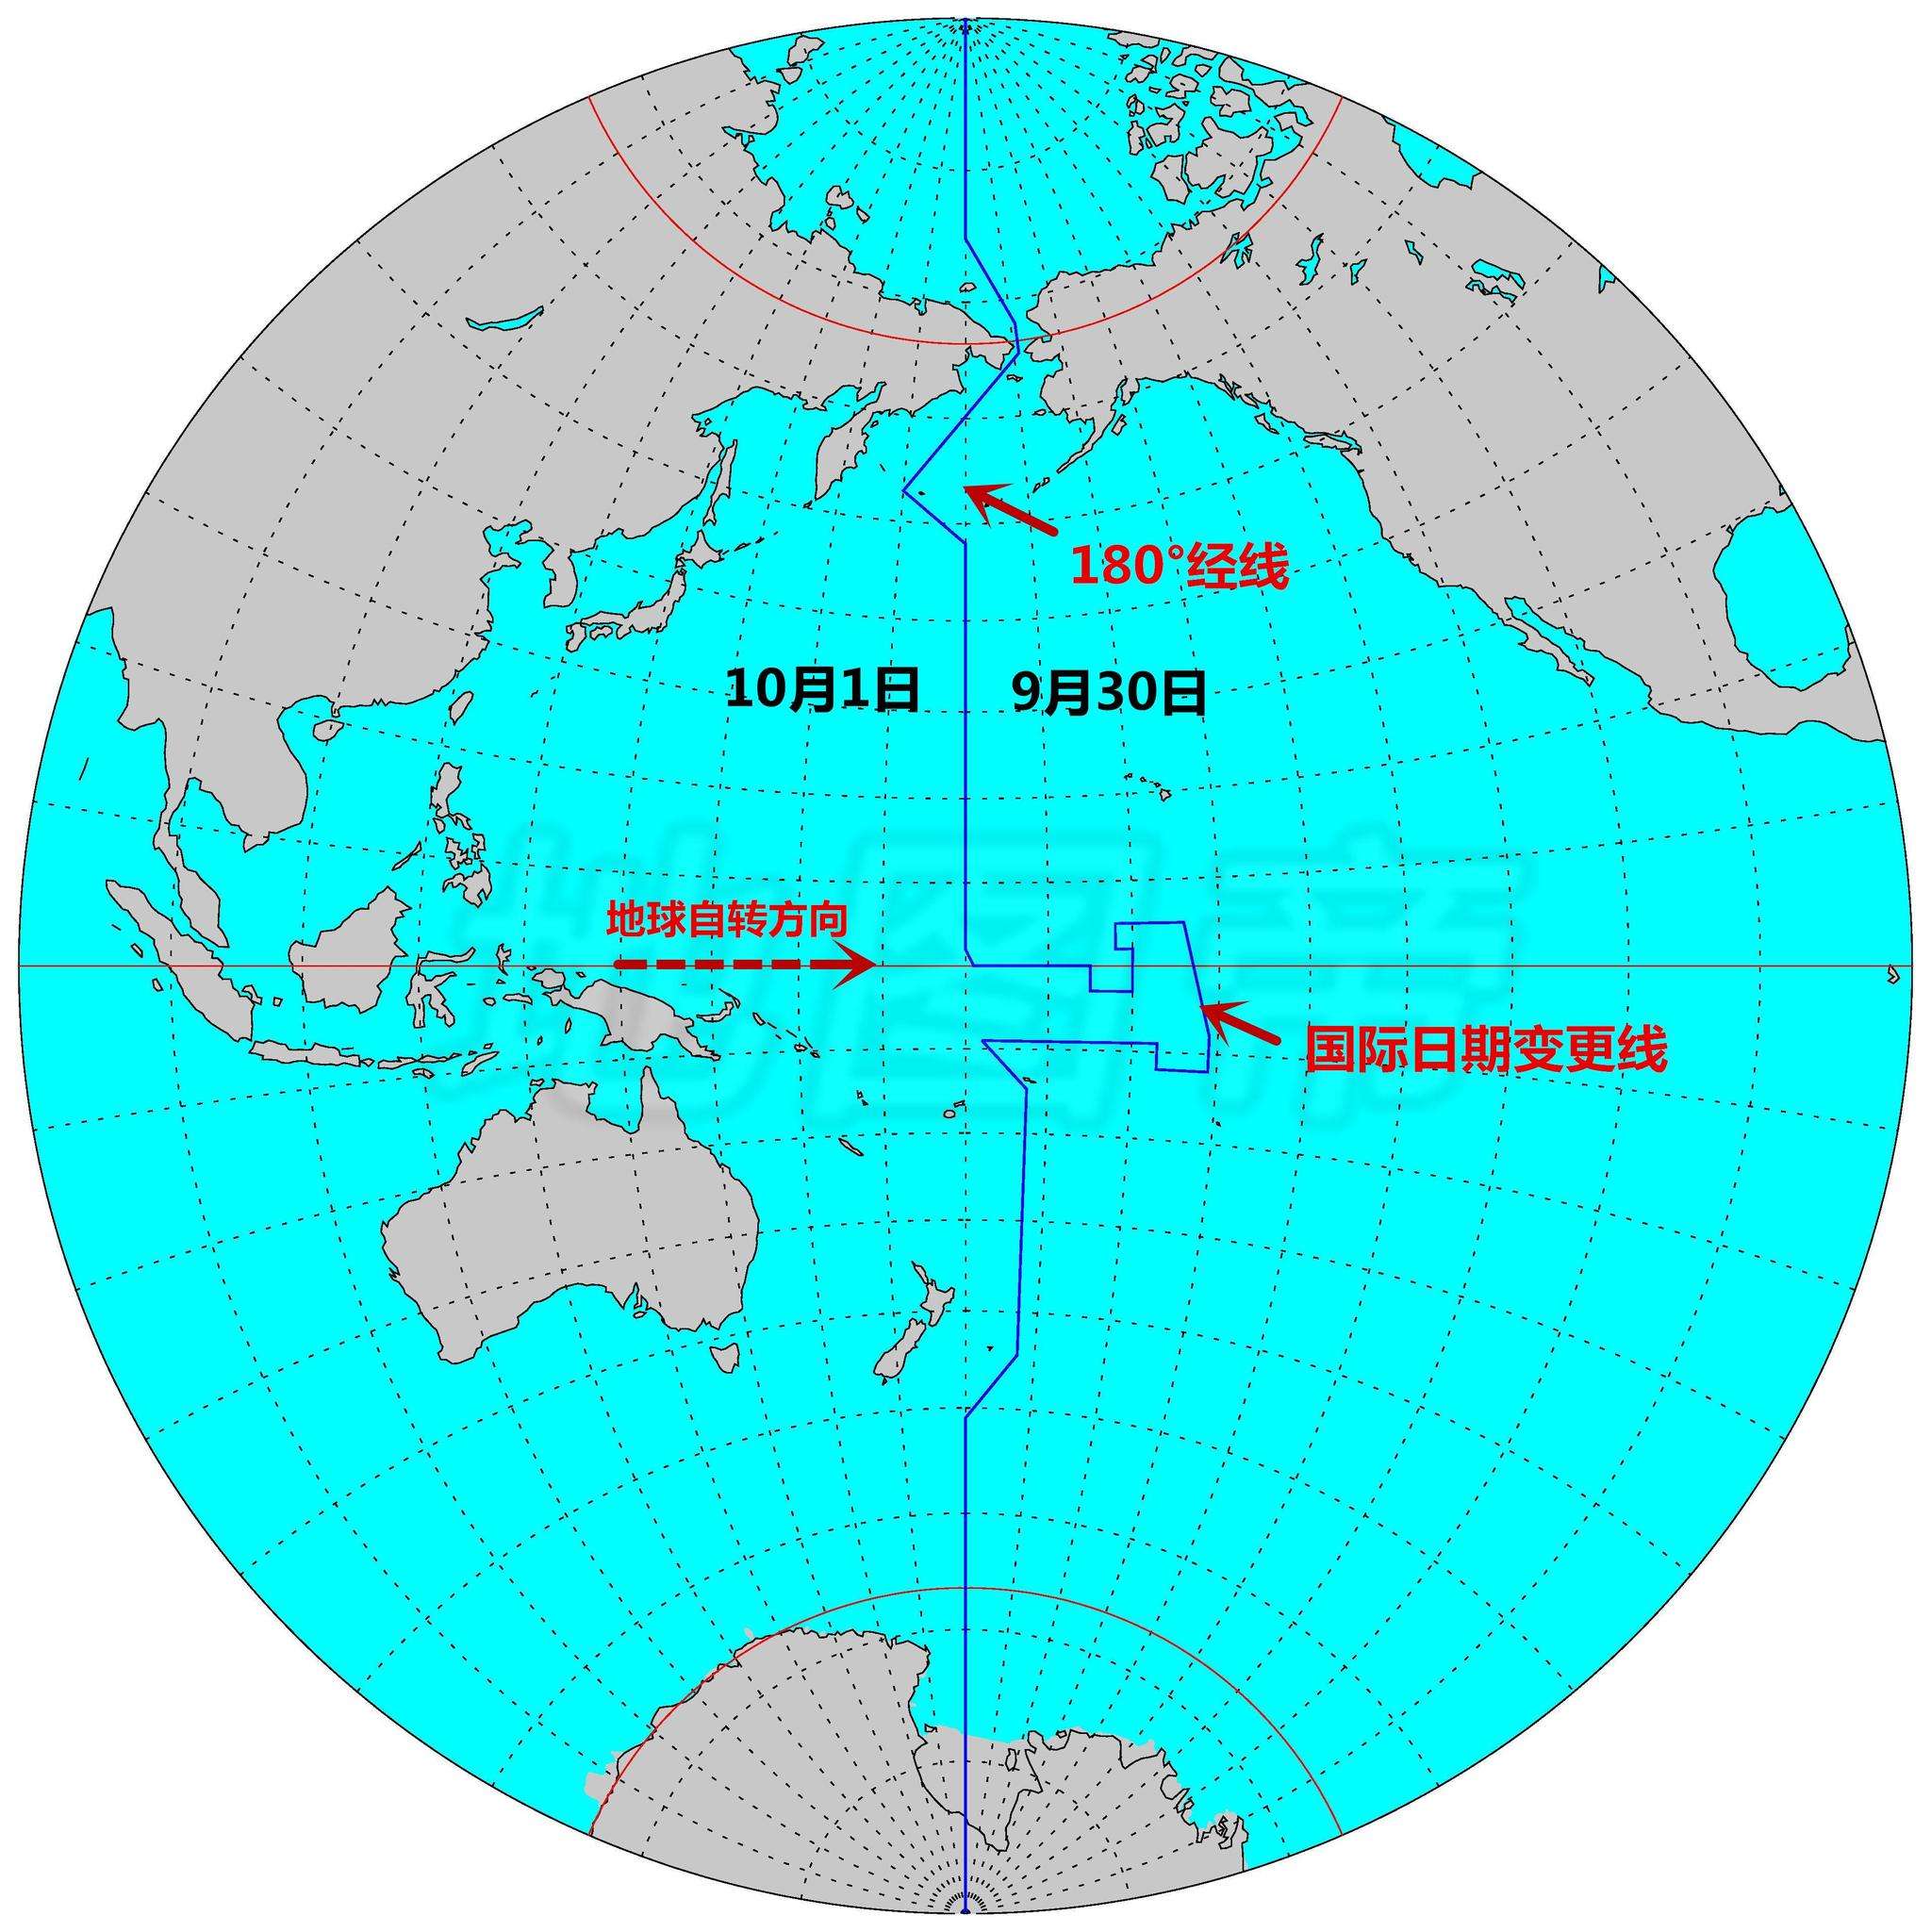 调整后的国际日期变更线,在太平洋中部基里巴斯所在位置向东突出,形似